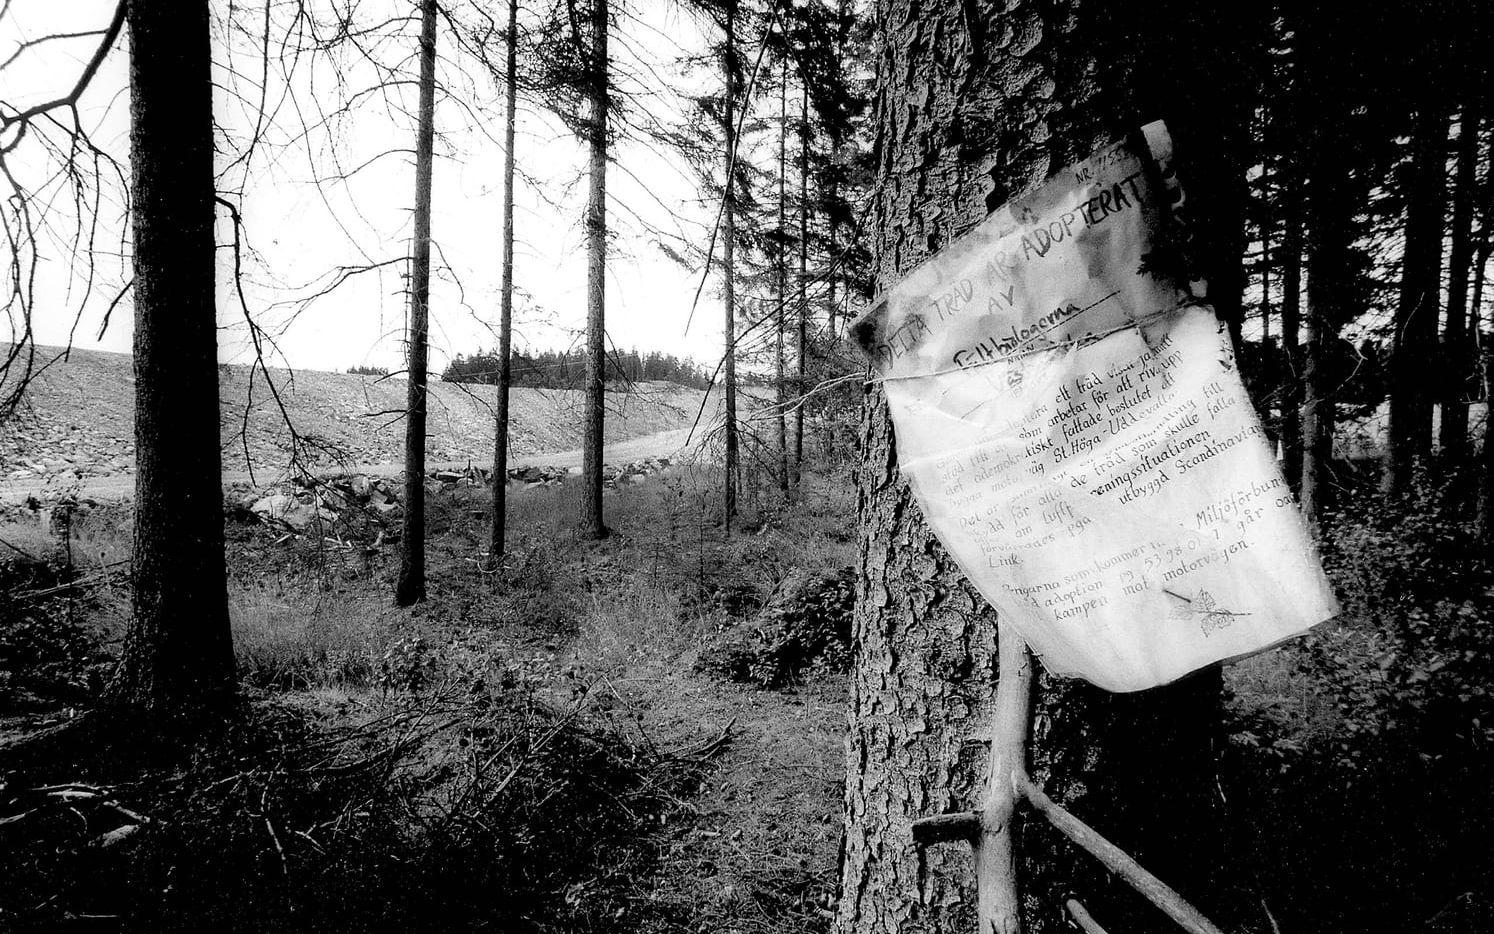 Adoption. 1989 07 17. Fältbiologerna adopterade träd i Ödsmålsdalen i förhoppningen om att de skulle få stå kvar.